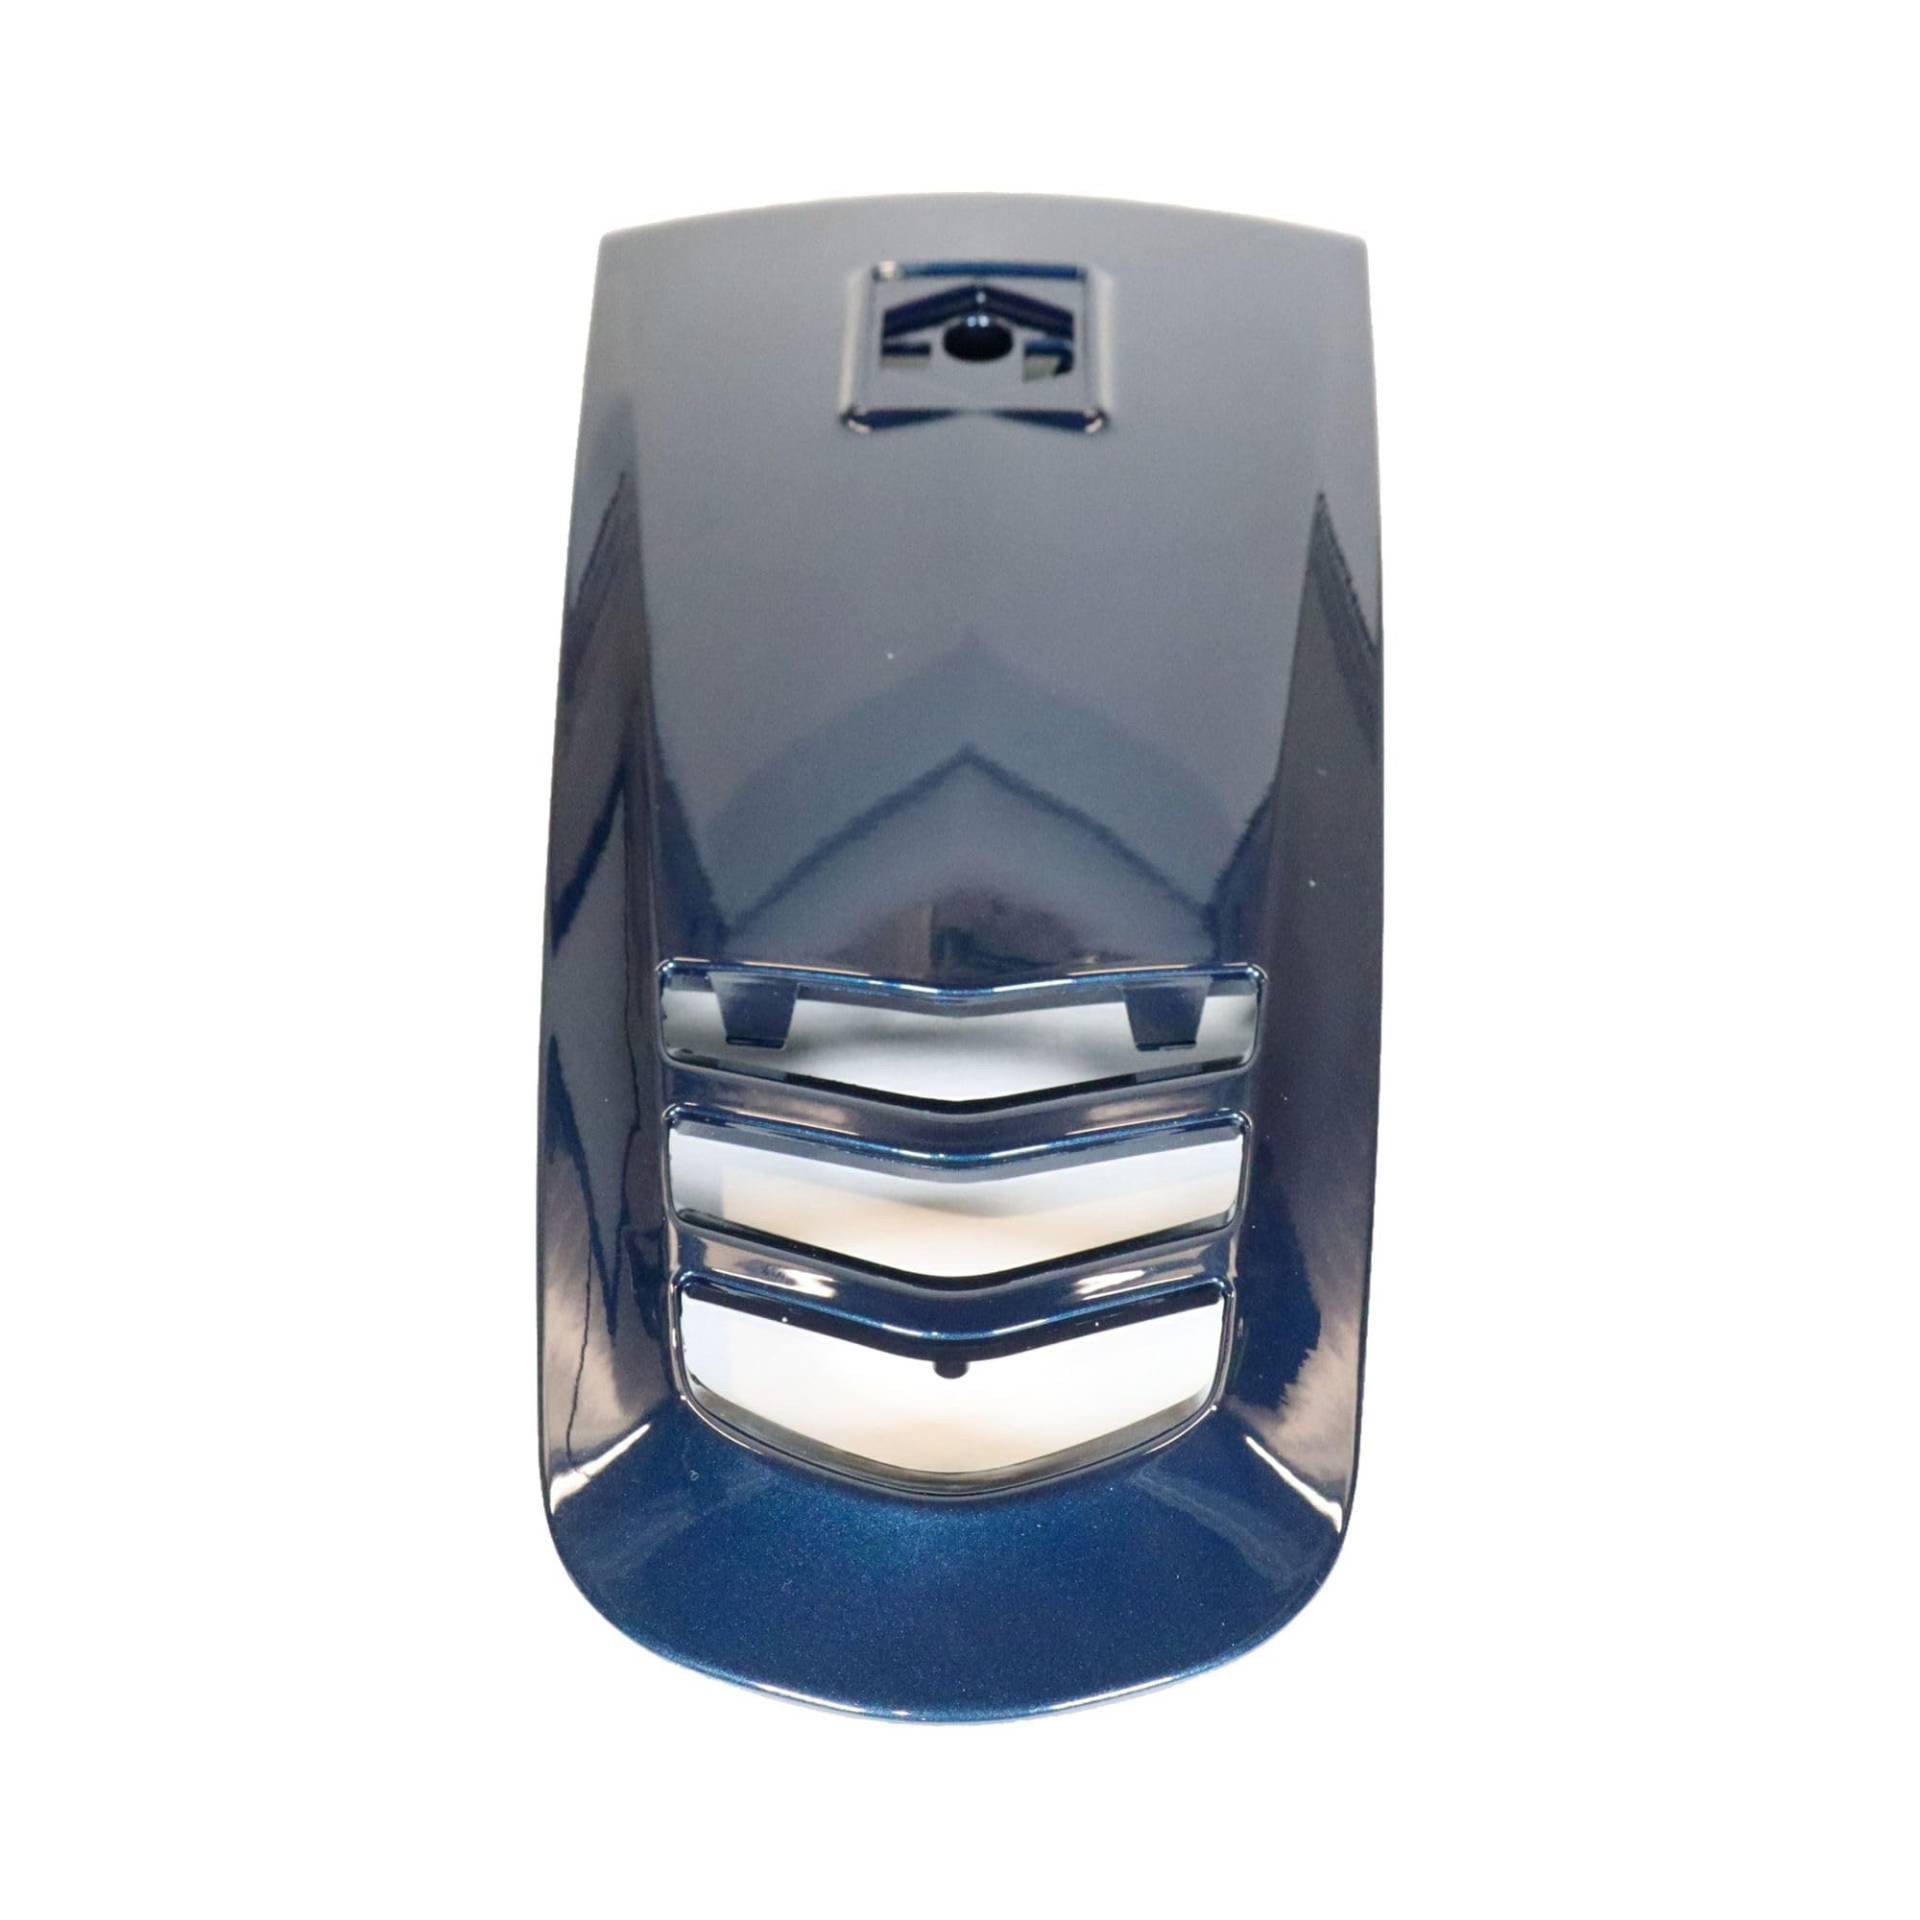 Kaskade Piaggio Verkleidung Horn, blau, DE blue midnight 222/A für Vespa GTS Bj. 2014, 1B000885000DE von Maxtuned